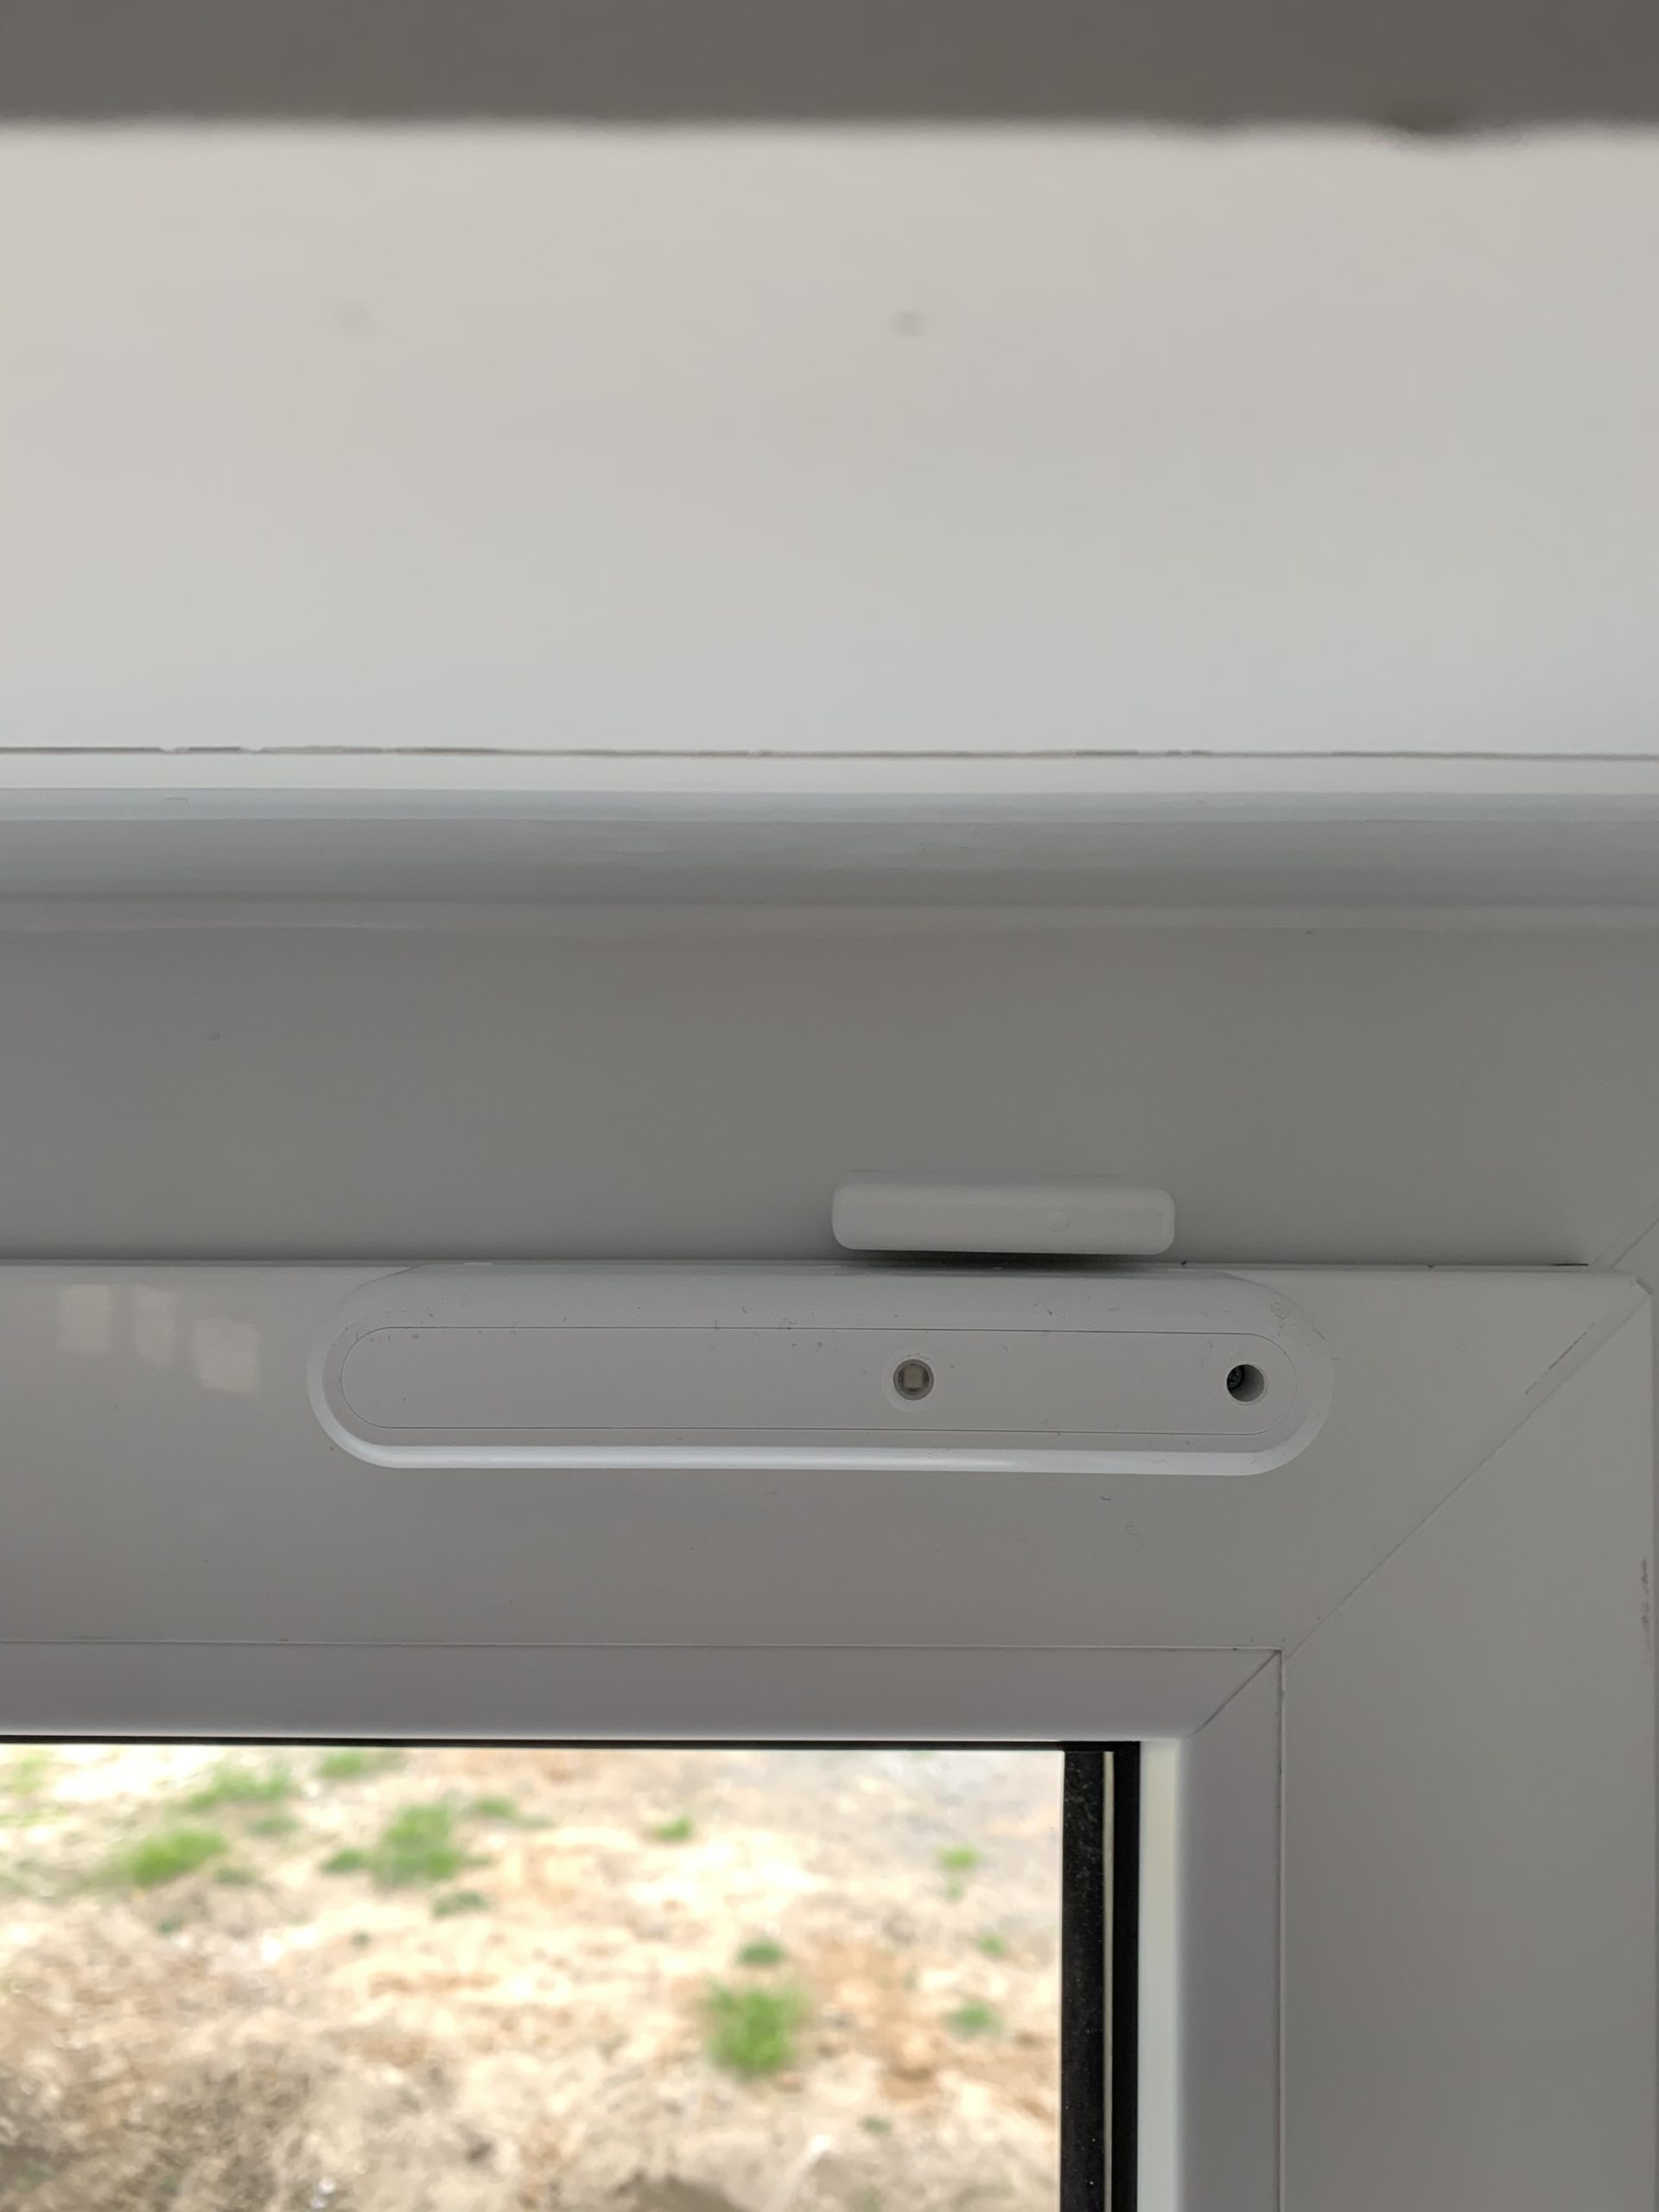 Ein installierter Glasbruchmelder auf einem Fensterrahmen.